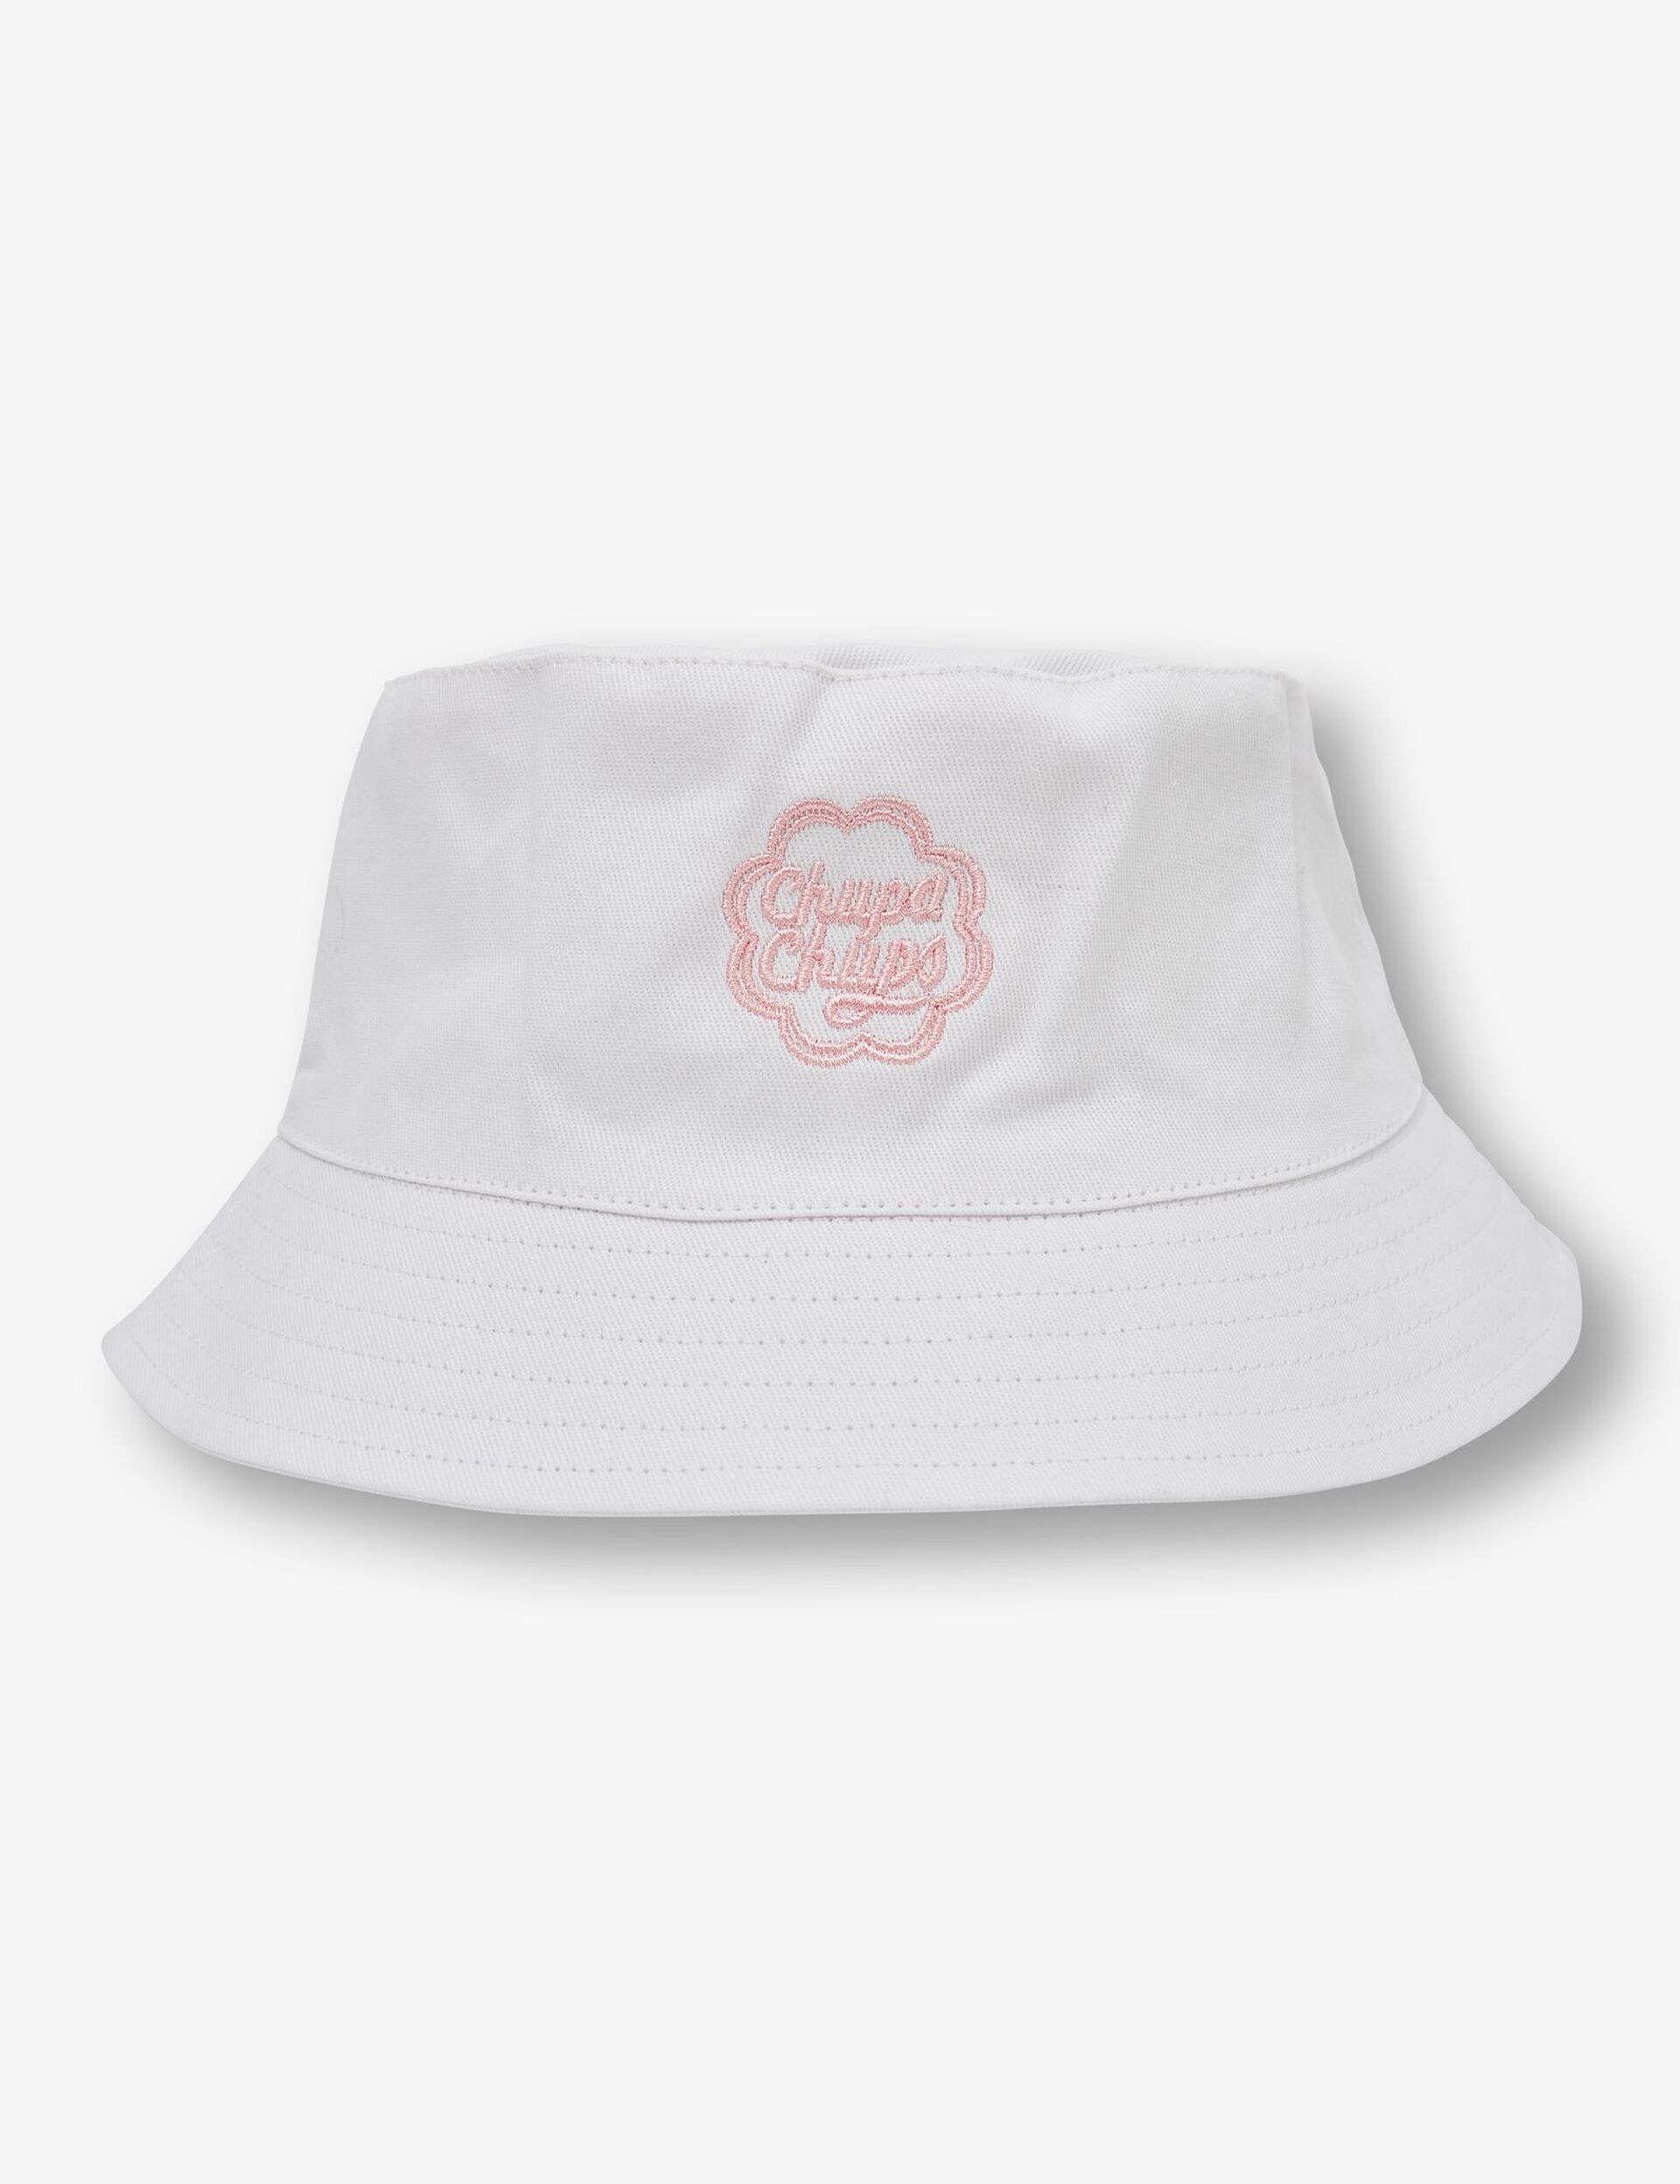 Chupa Chups bucket hat